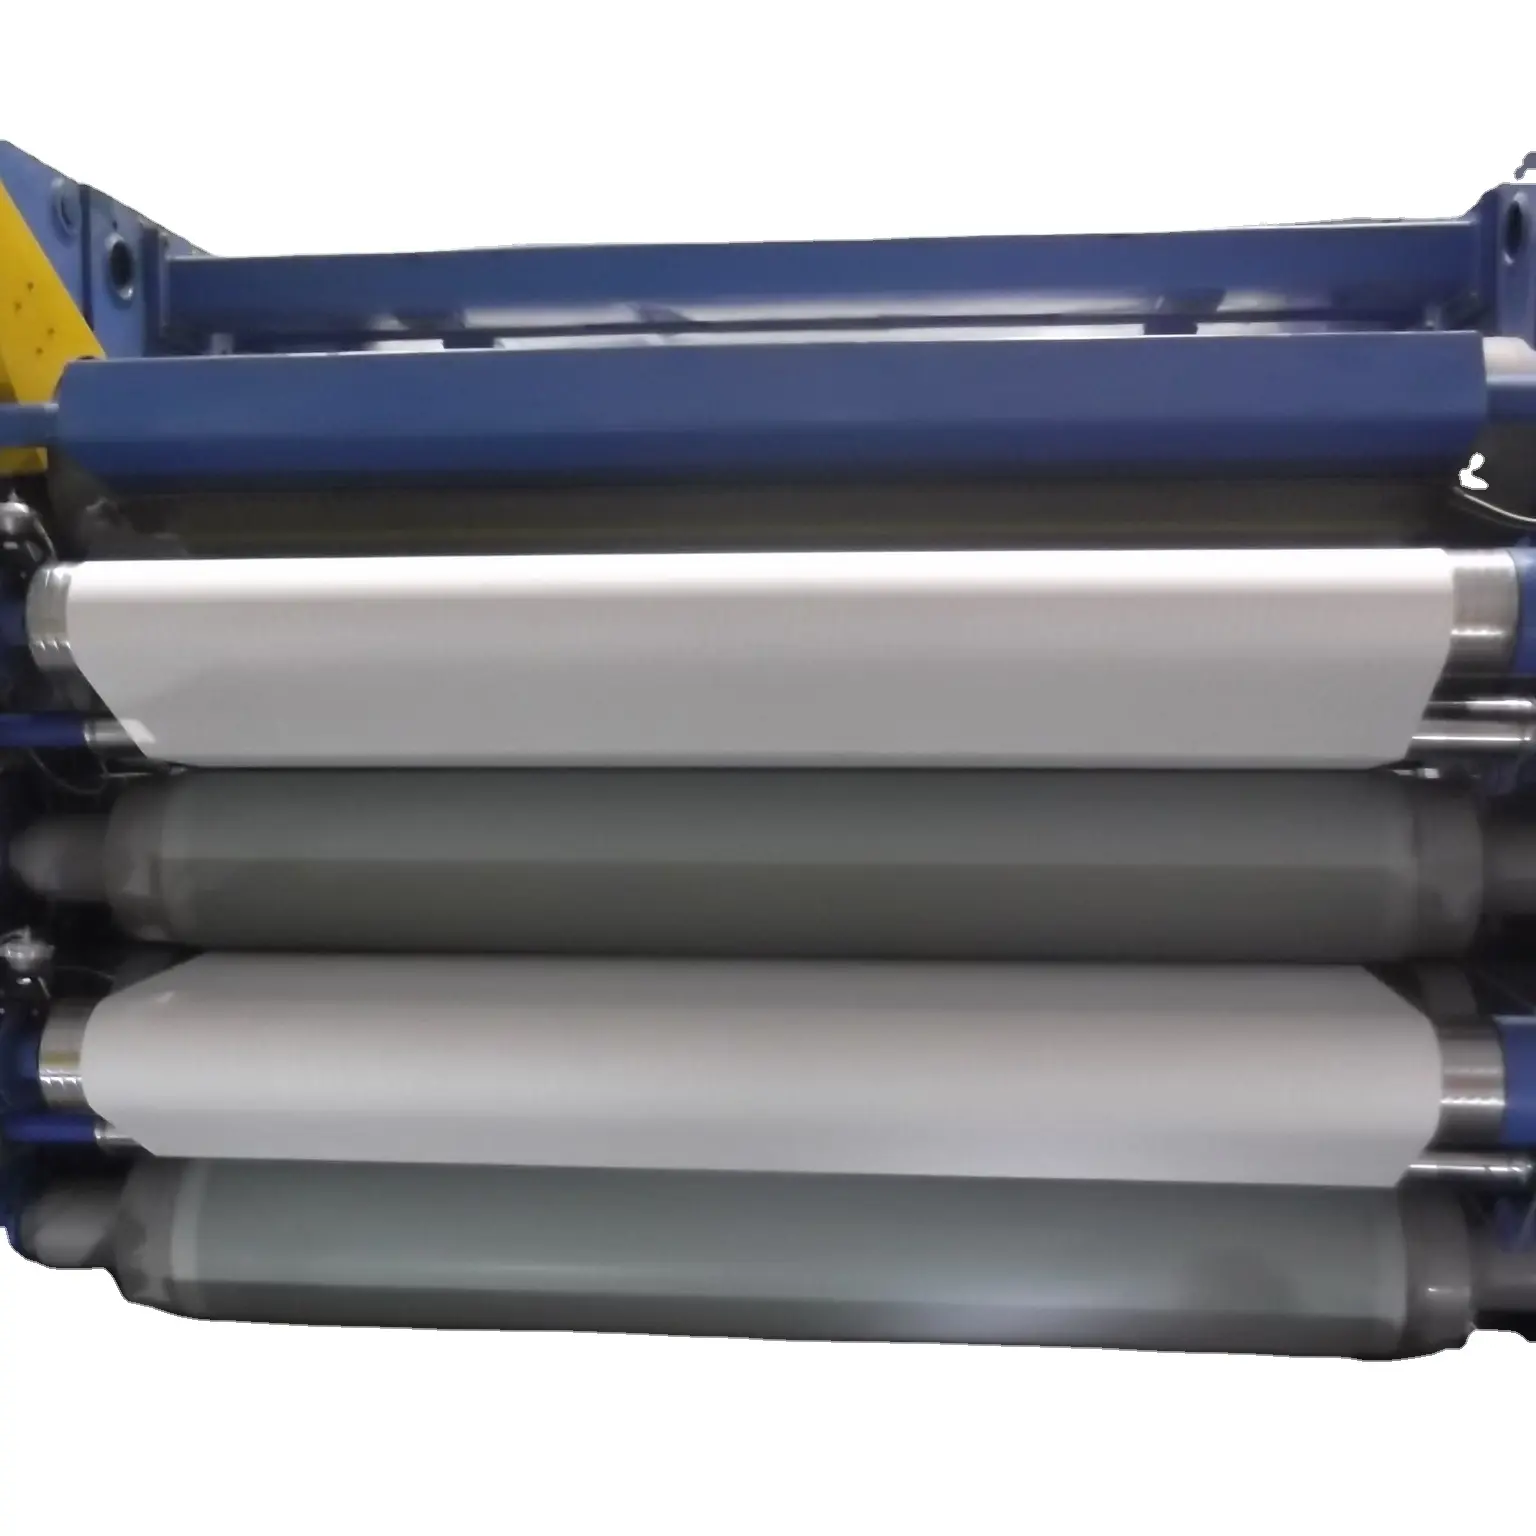 6-12 рулонов бумаги, супер-каландр для машины по производству бумаги